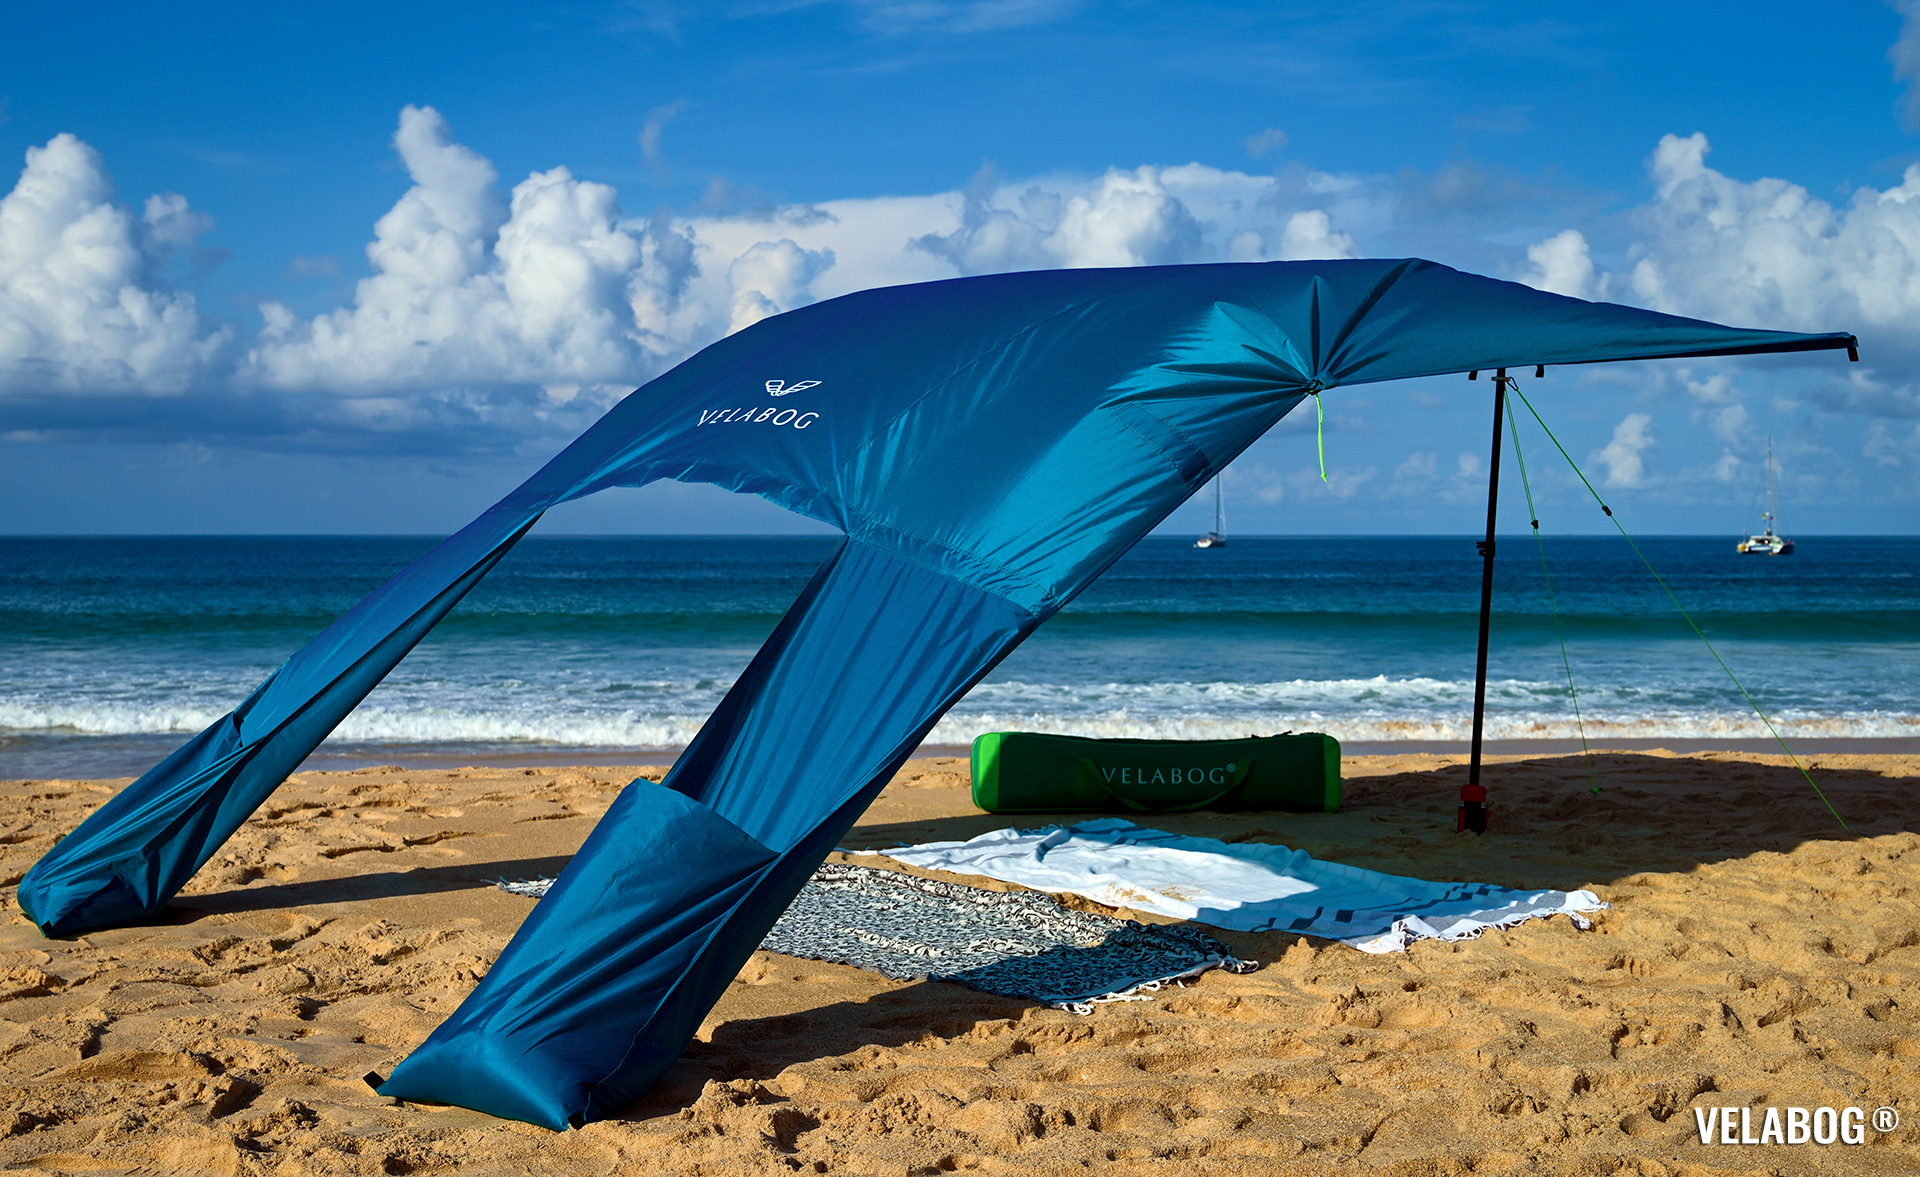 Солнечный пляжный парус навес Velabog Breeze. Вариант установки А - от слабого до сильного ветра. Цвет голубой. Лучшая защита от солнца на пляже. | Velabog ©